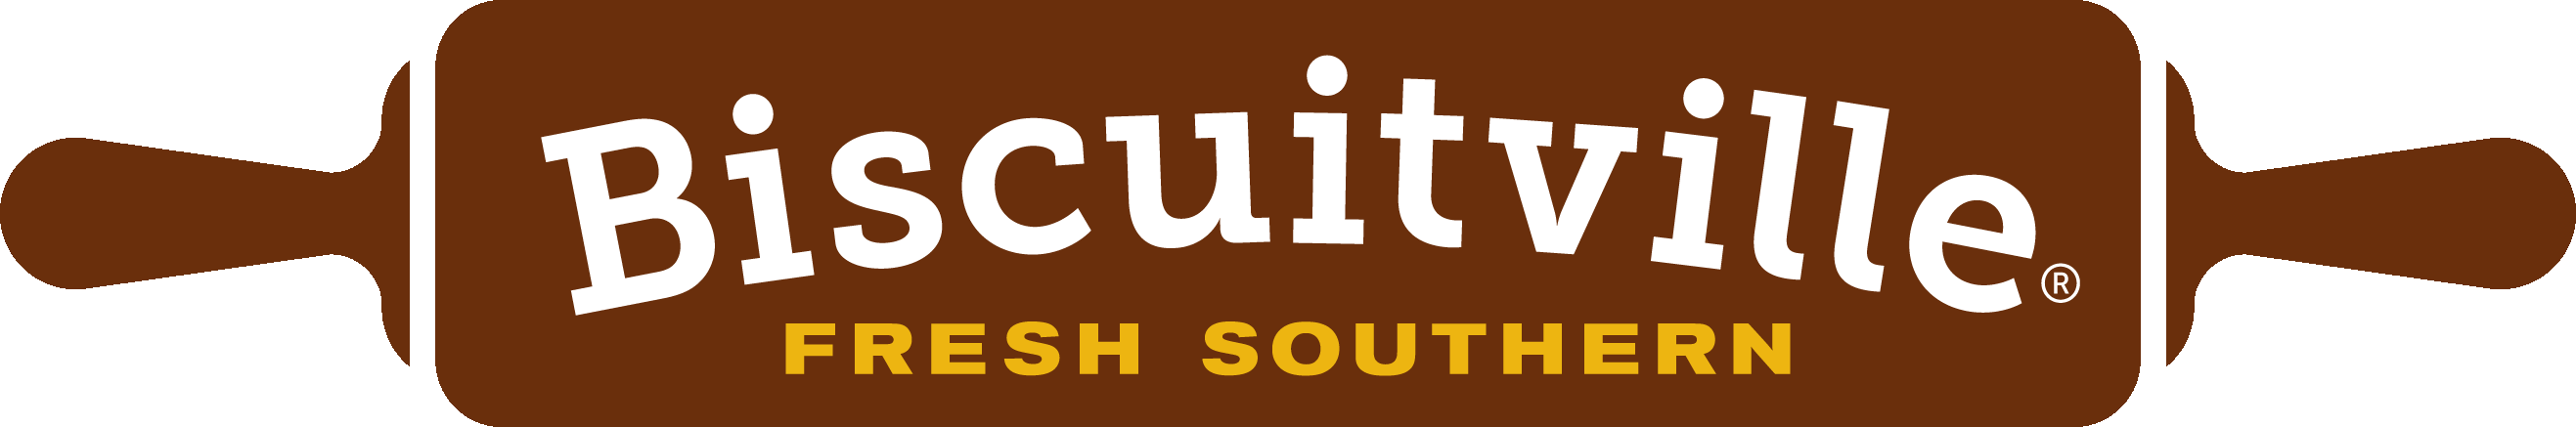 Biscuitville Logo - For the Media